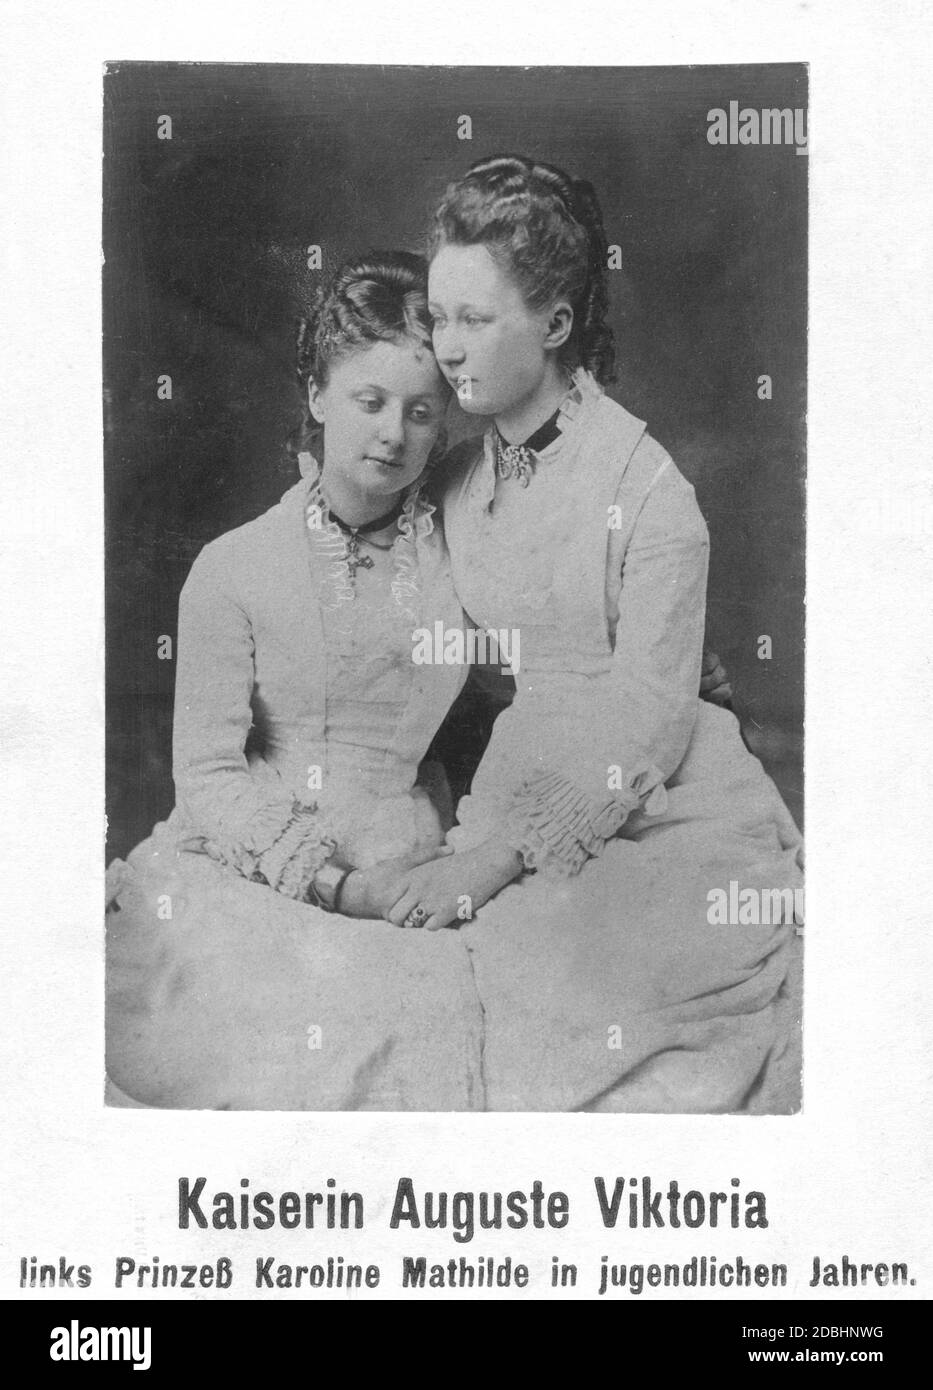 Le portrait montre les sœurs et princesses Caroline Mathilde (à gauche) et Augusta Victoria du Schleswig-Holstein-Sonderburg-Augustenburg (à droite, plus tard impératrice d'Allemagne). Photo non datée, prise vers 1875. Banque D'Images